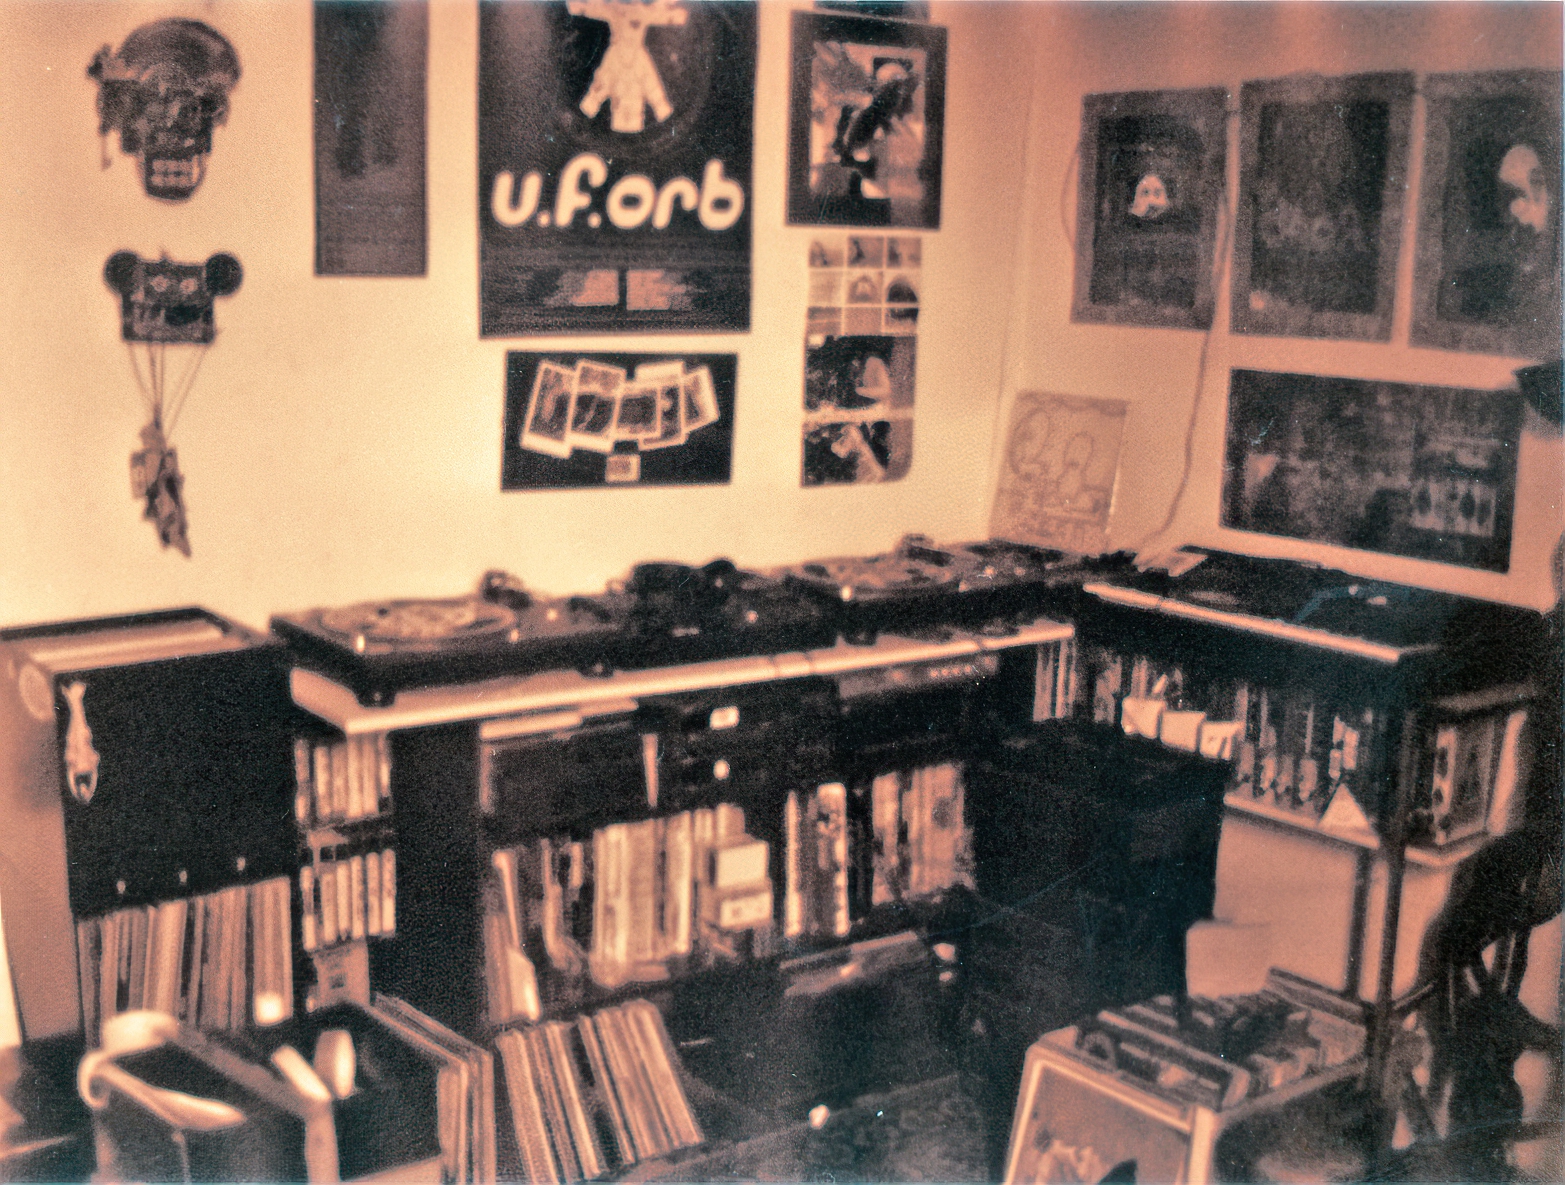 Kev bedroom 1993